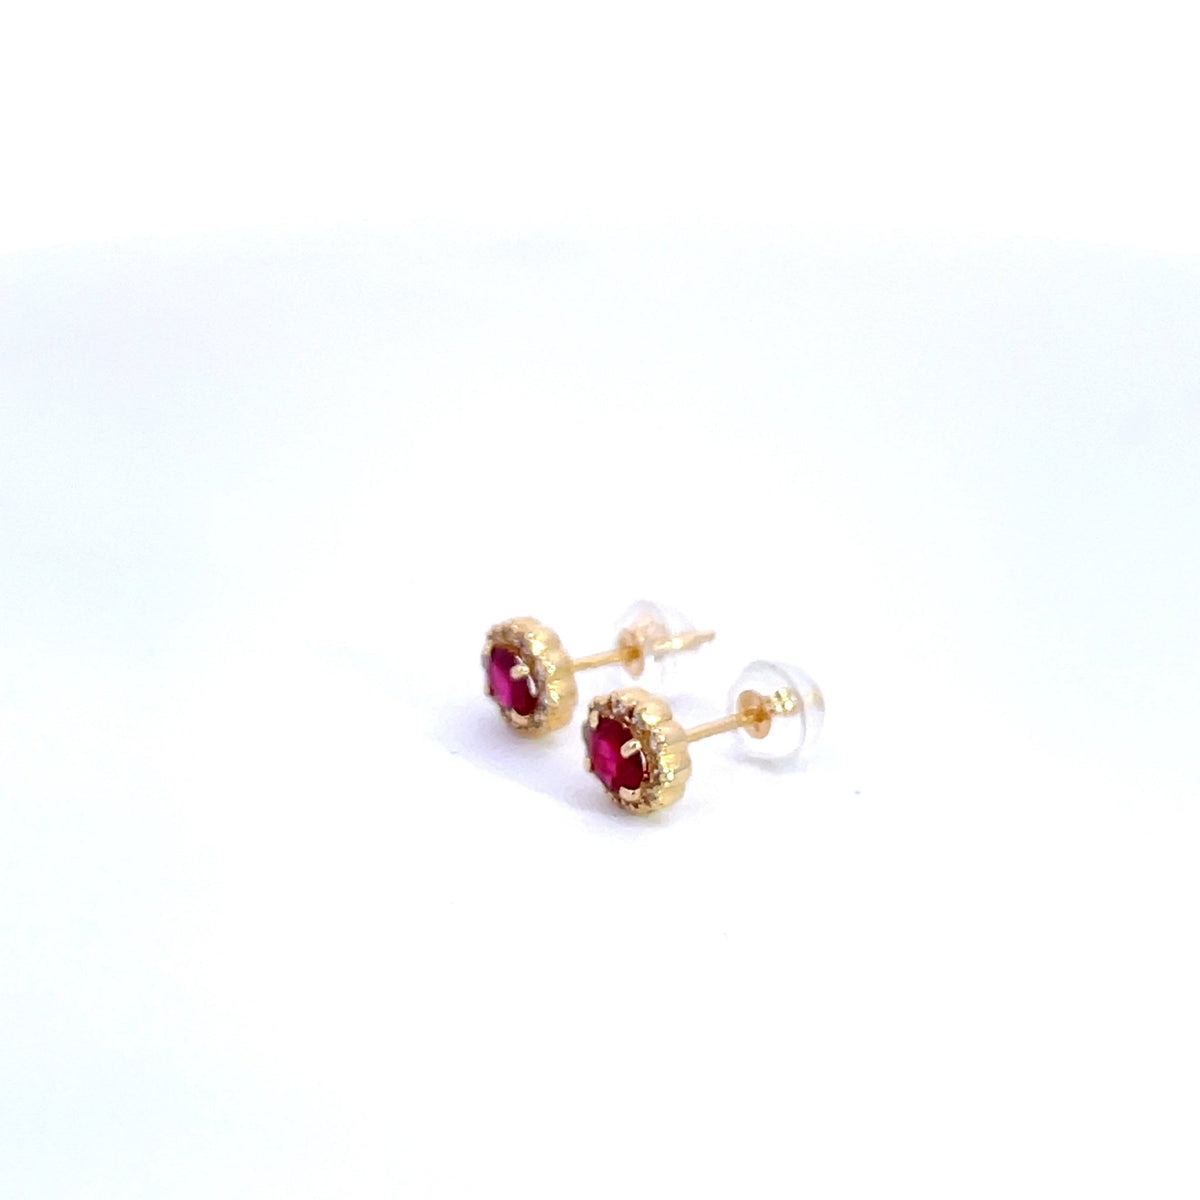 Ruby and Diamond Cluster Studs - Markbridge Jewellers